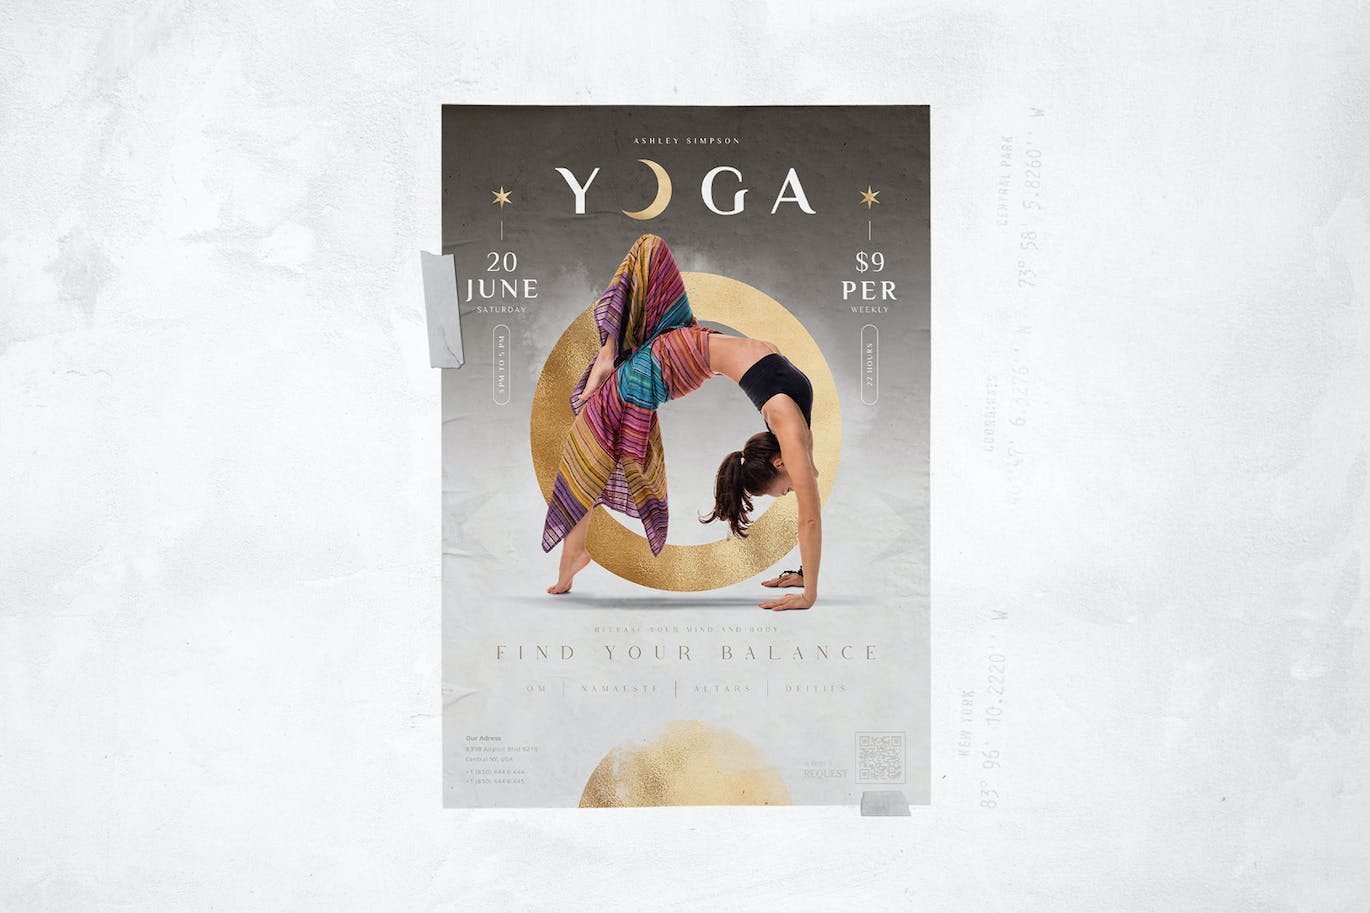 瑜伽课程宣传单模板 Yoga Flyer 设计素材 第2张